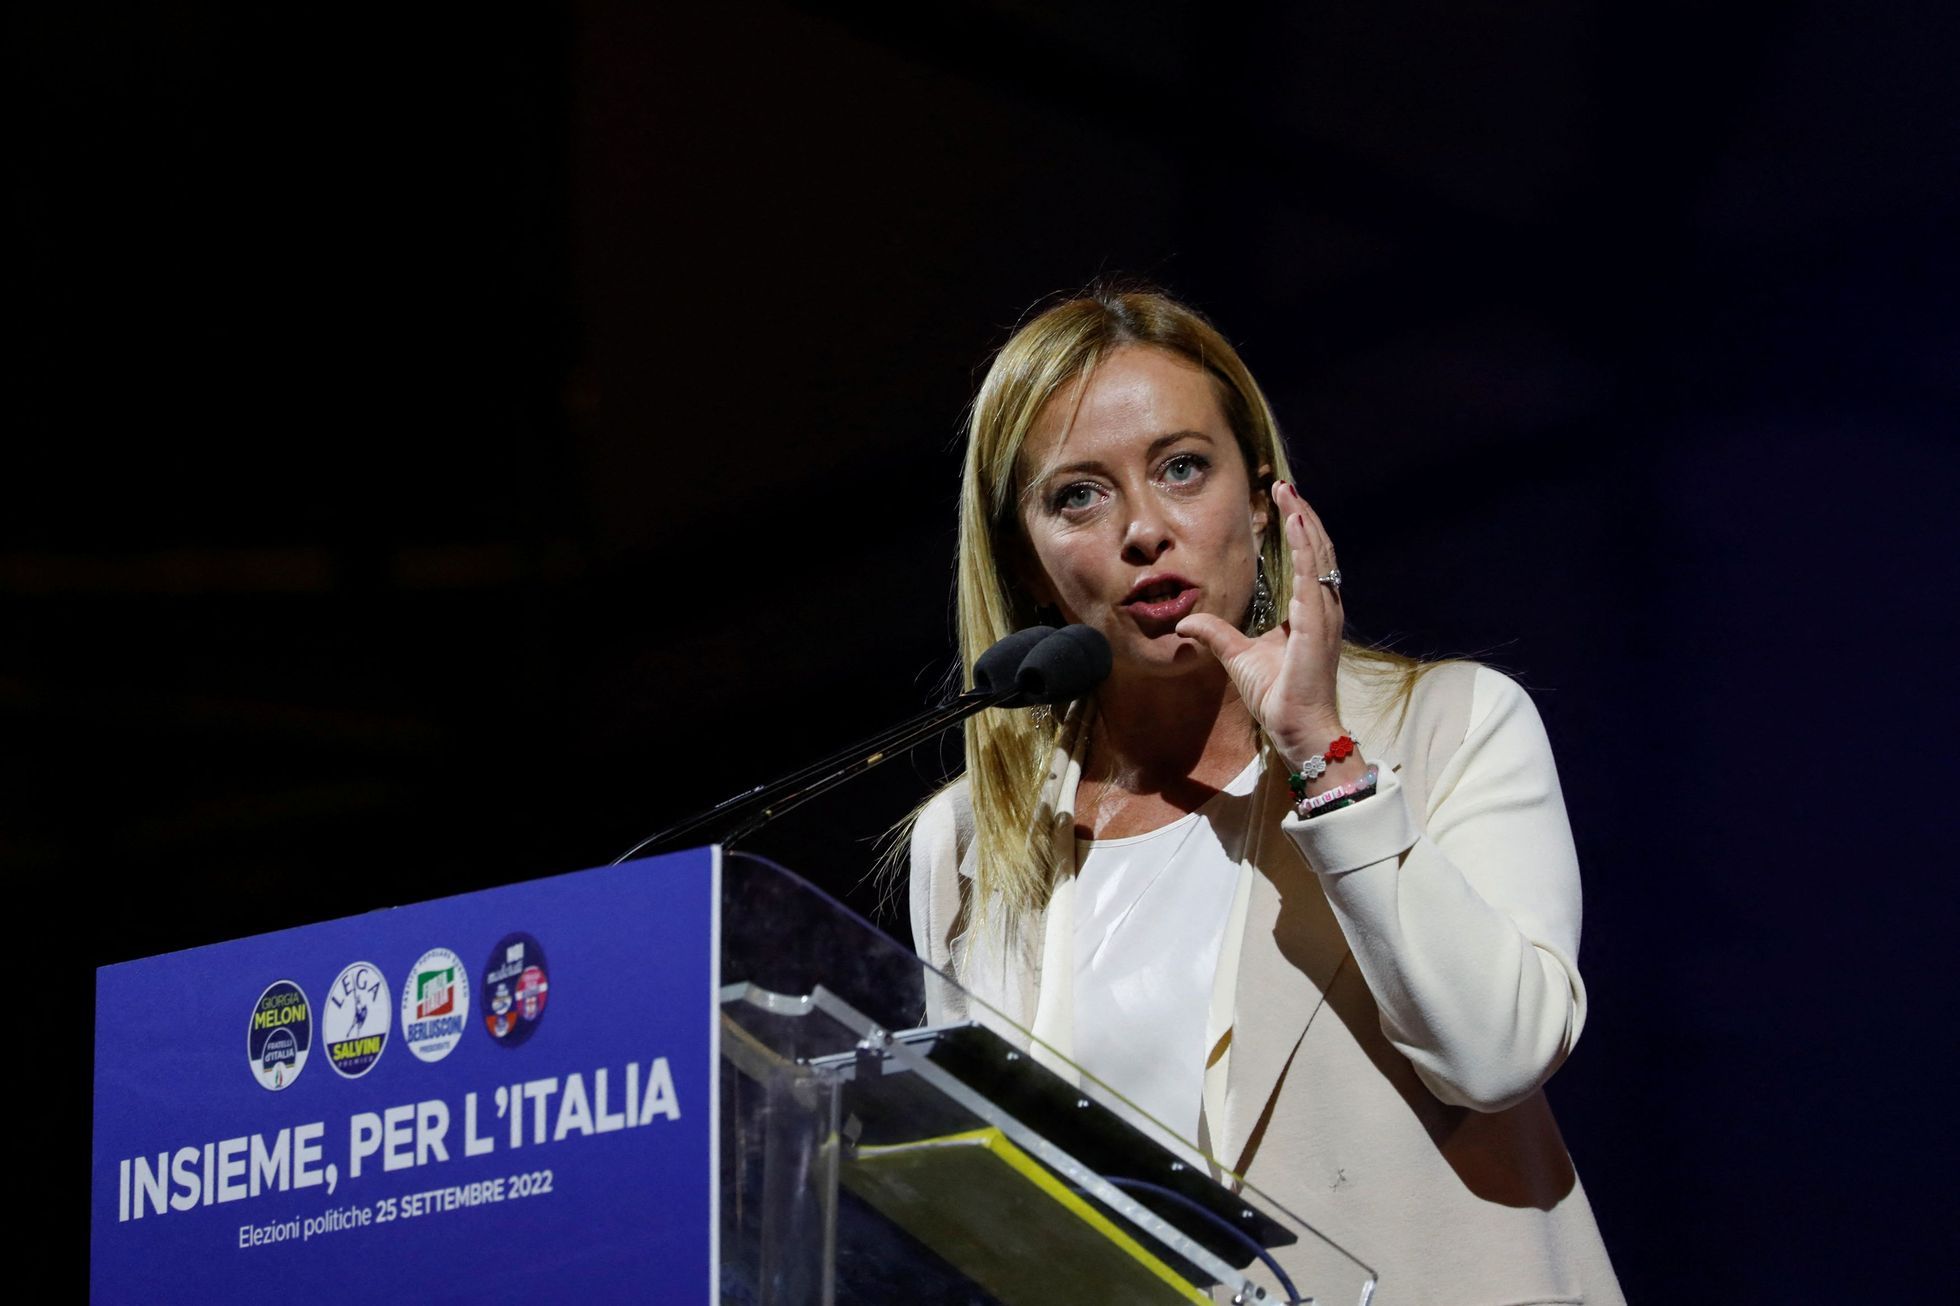 Governeremo come i nostri amici nella Repubblica Ceca, riferisce la vincitrice italiana delle elezioni Meloniová